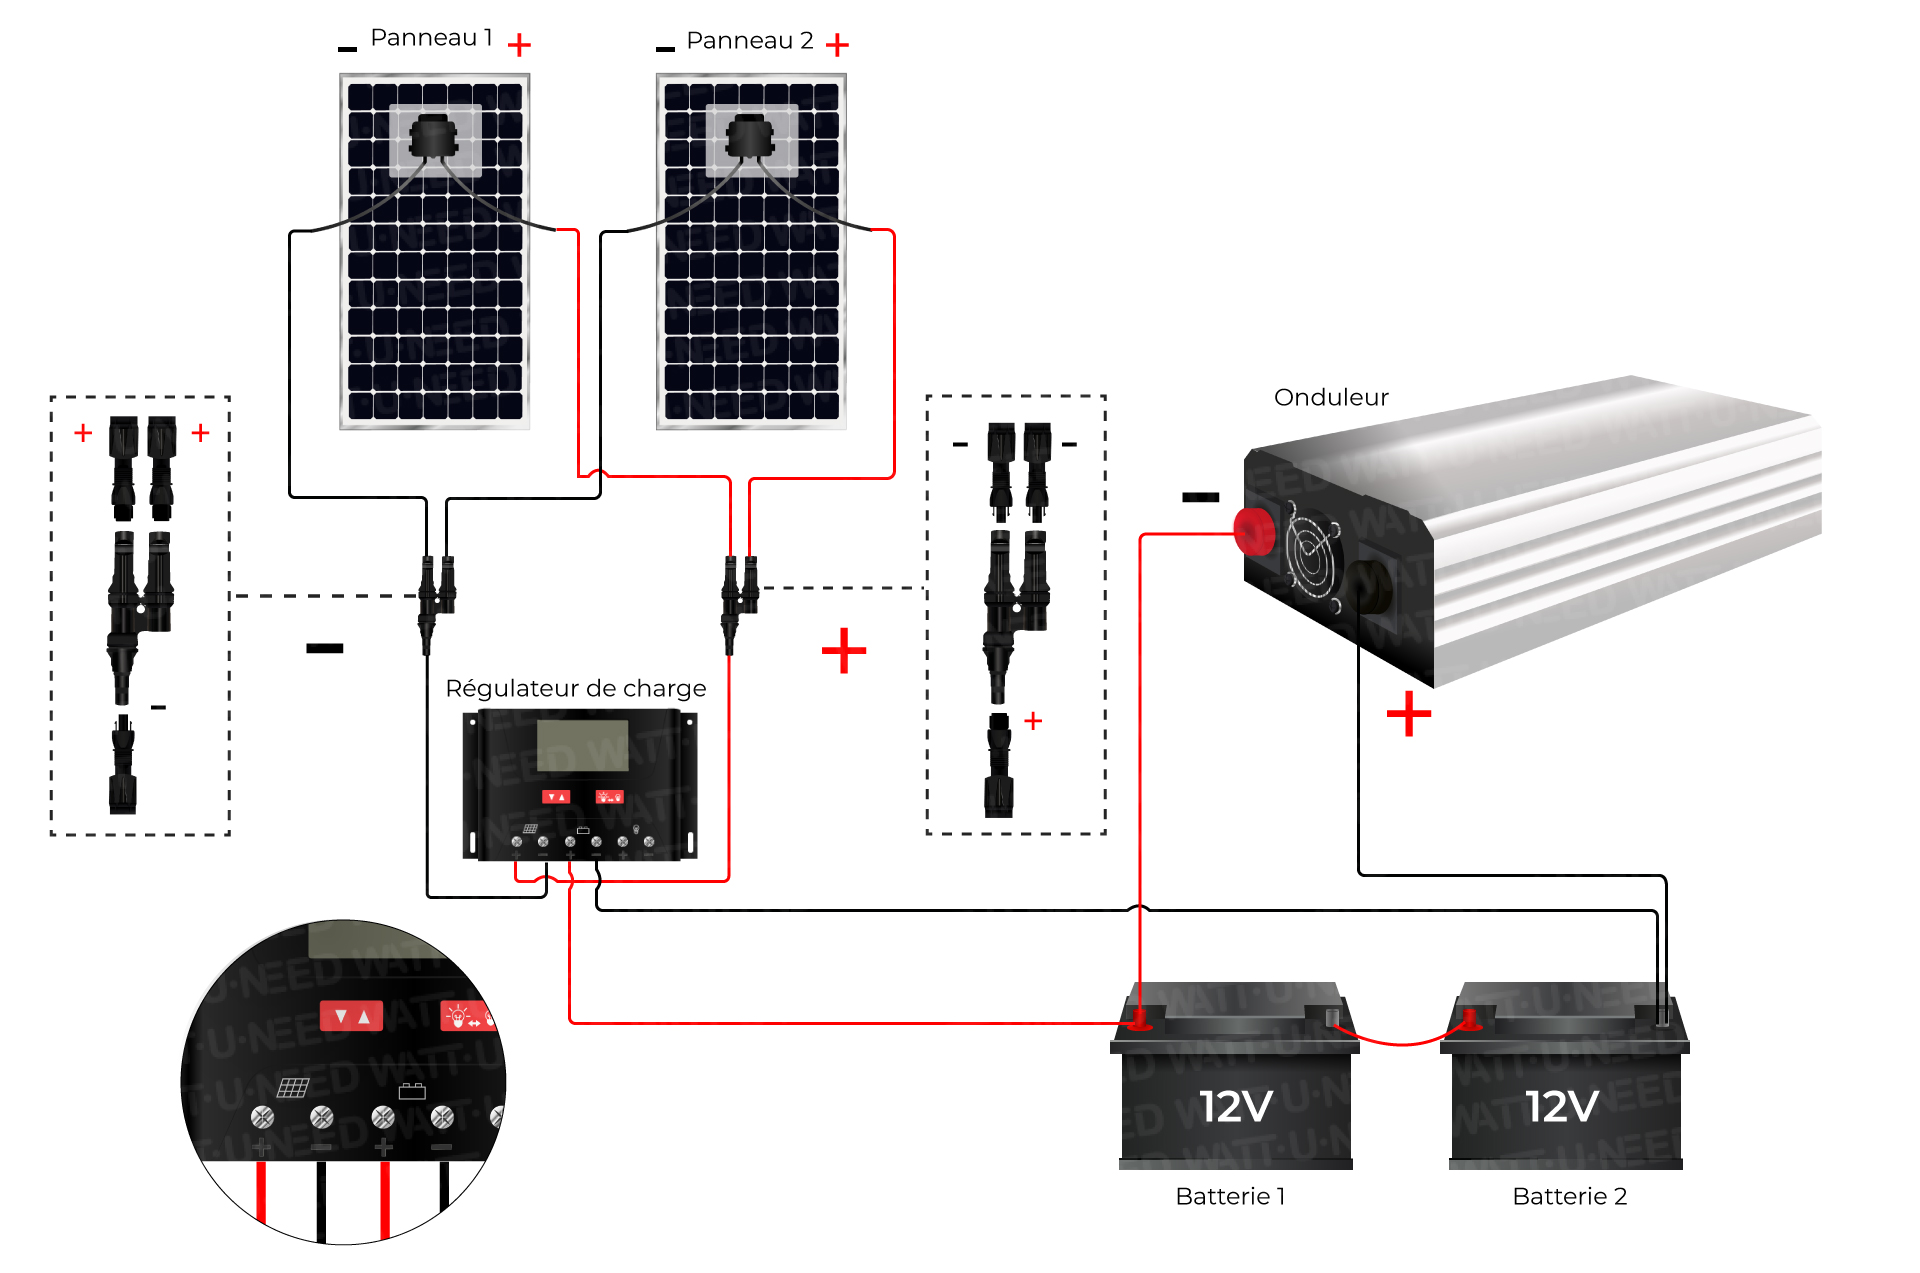 montage d'un kit solaire autonome en 24V